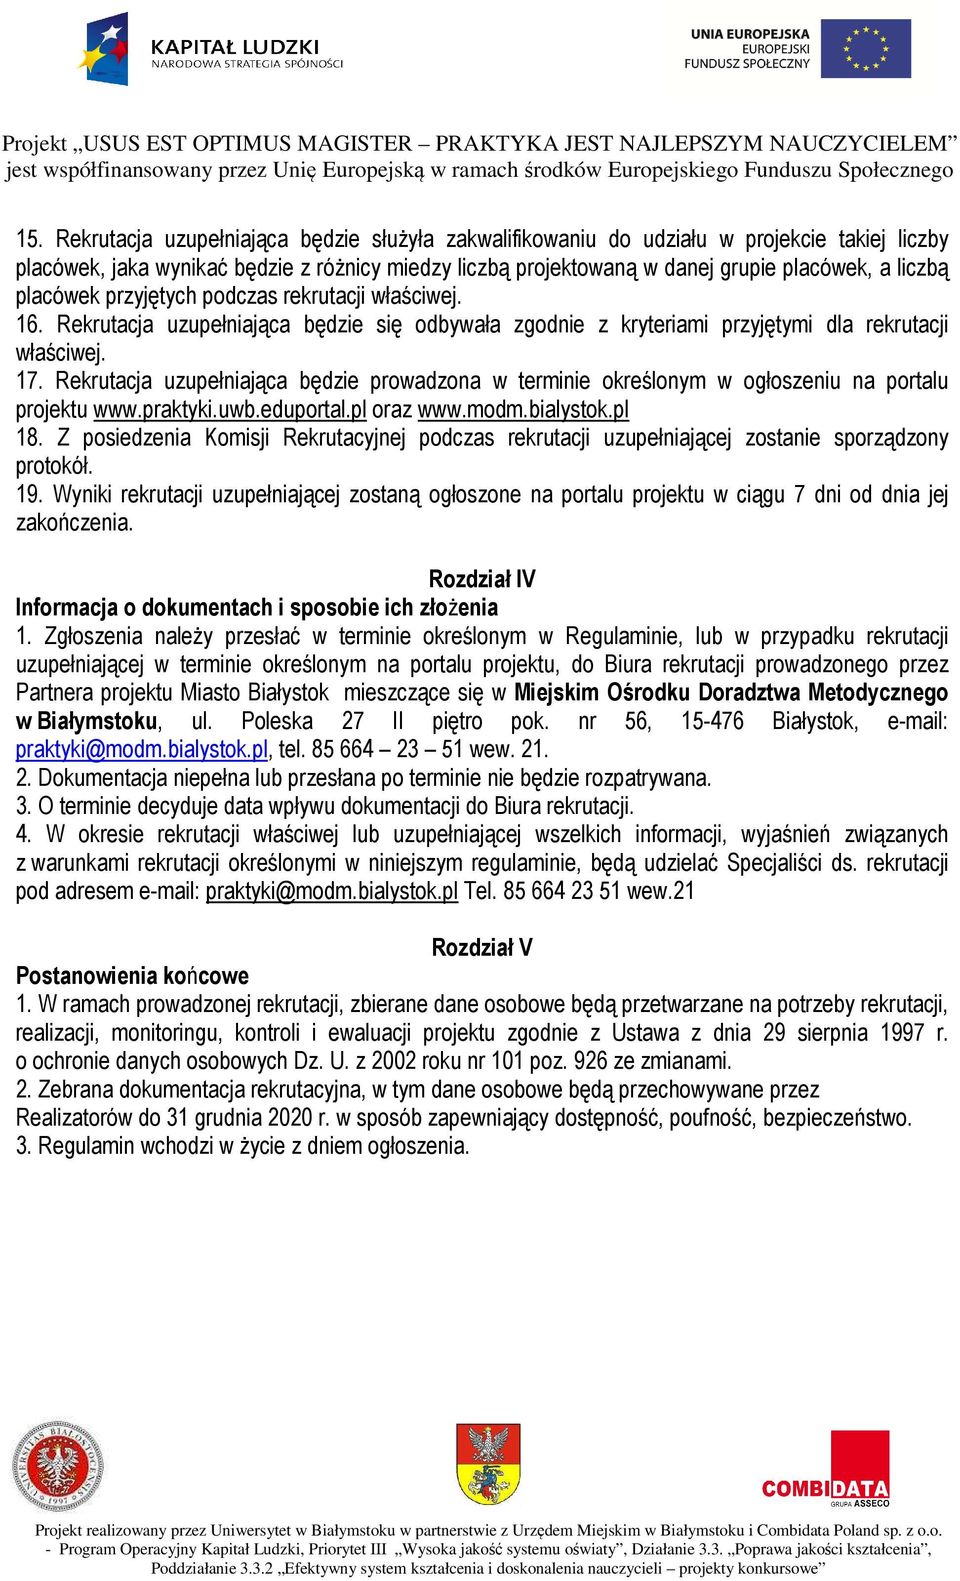 Rekrutacja uzupełniająca będzie prowadzona w terminie określonym w ogłoszeniu na portalu projektu www.praktyki.uwb.eduportal.pl oraz www.modm.bialystok.pl 18.